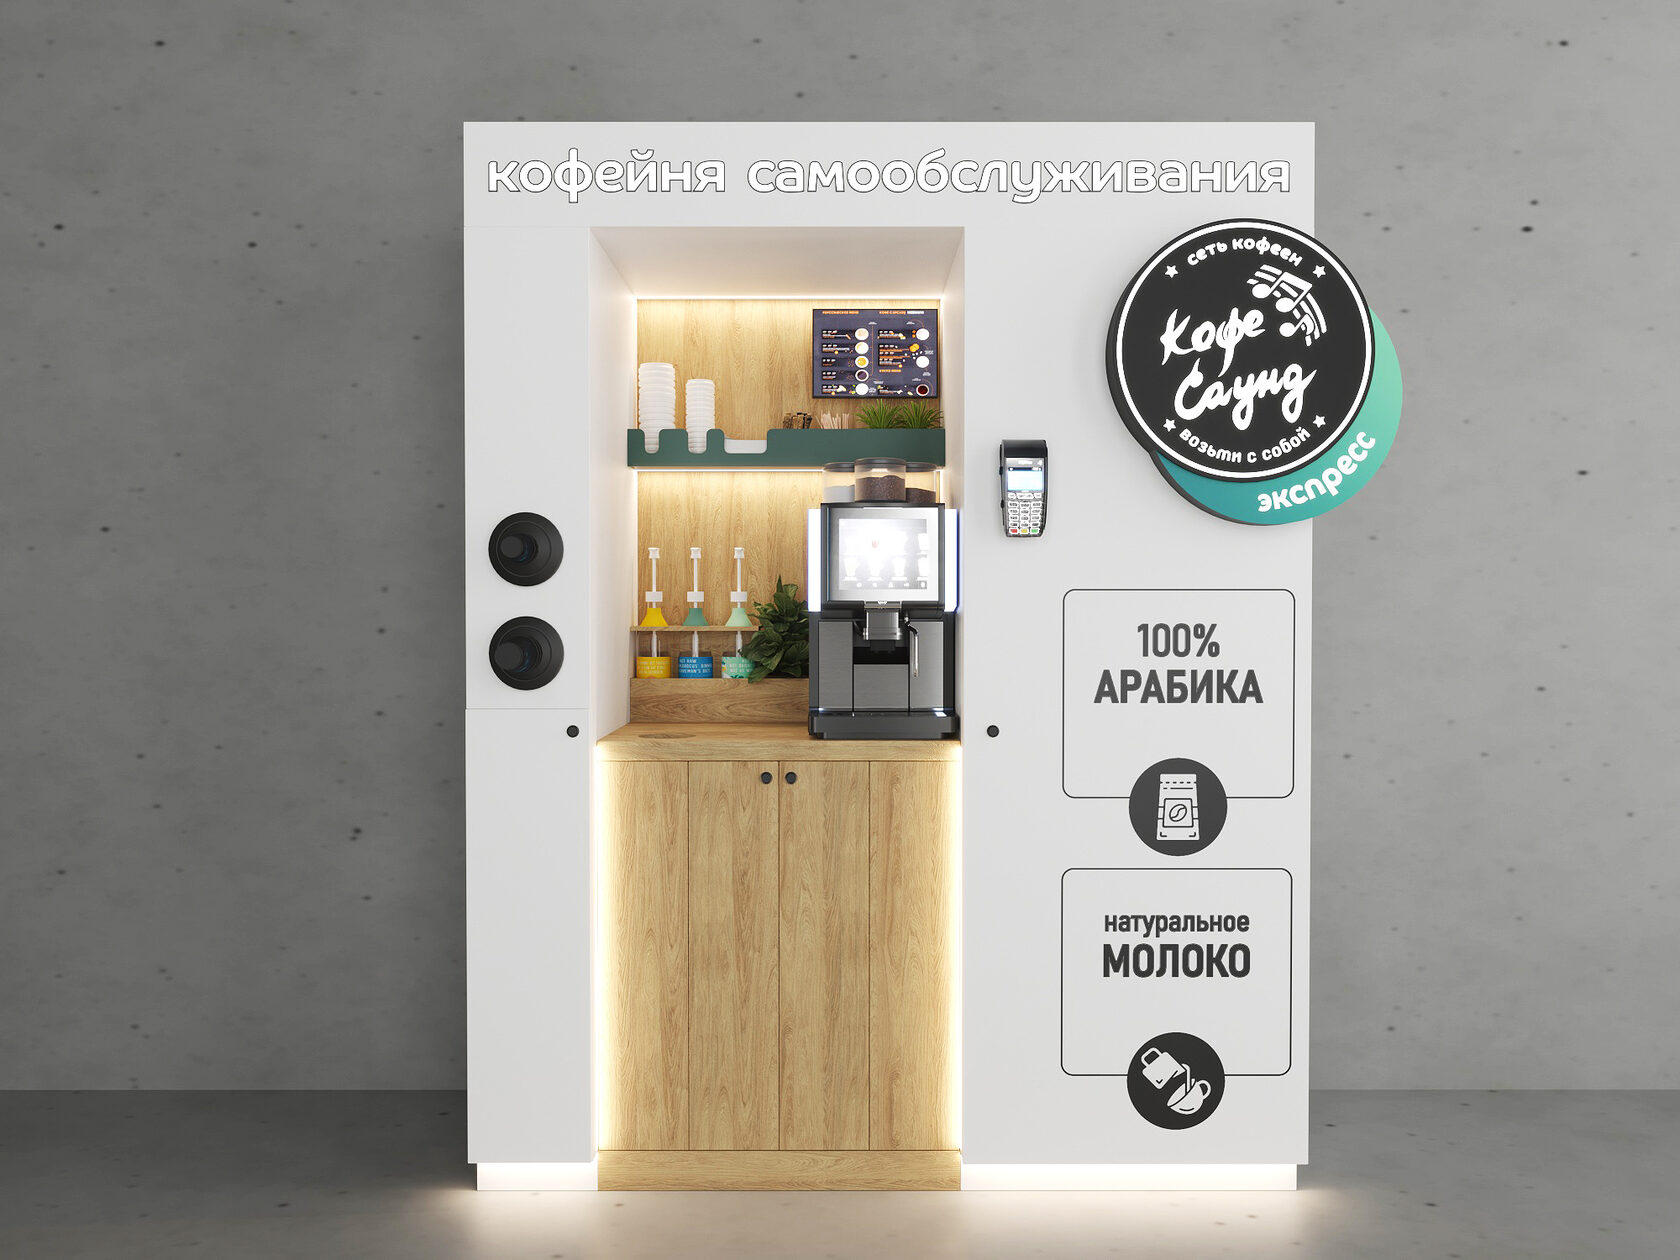 Что такое кофейный автомат? Как он устроен? Как работает?